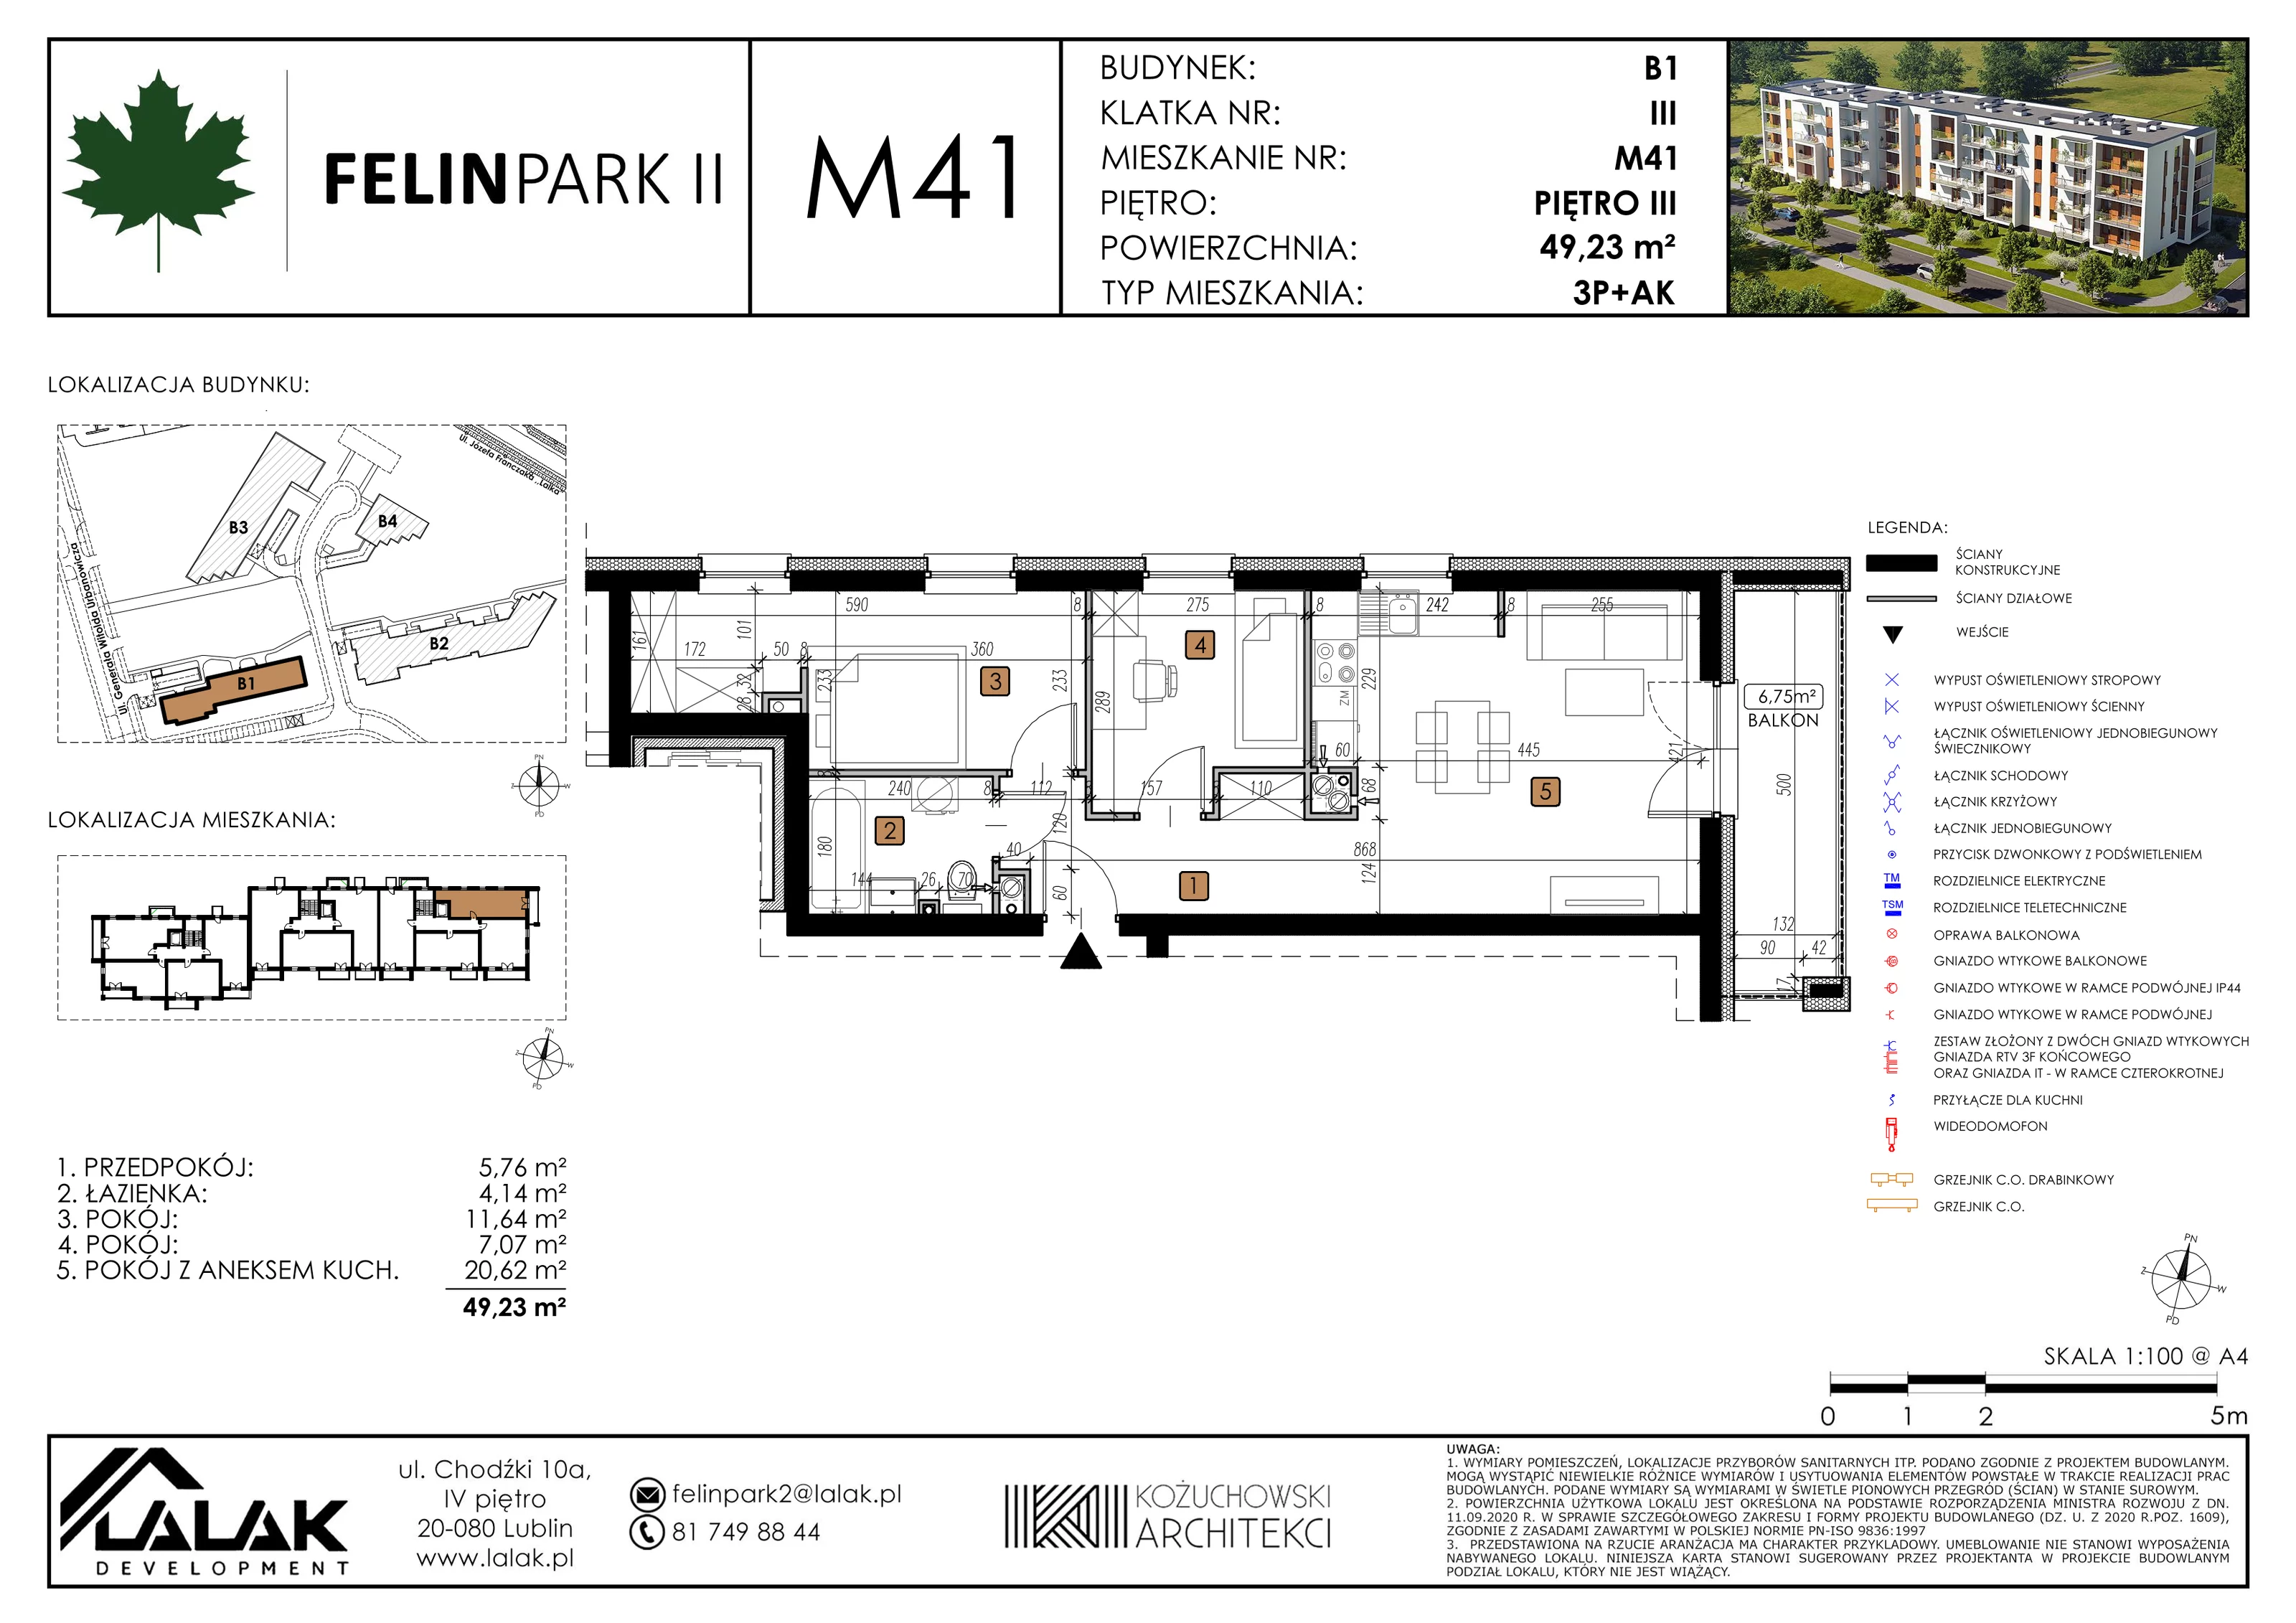 Mieszkanie 49,23 m², piętro 3, oferta nr B1_M41/I, Felin Park II, Lublin, Felin, ul. gen. Stanisława Skalskiego 8-10